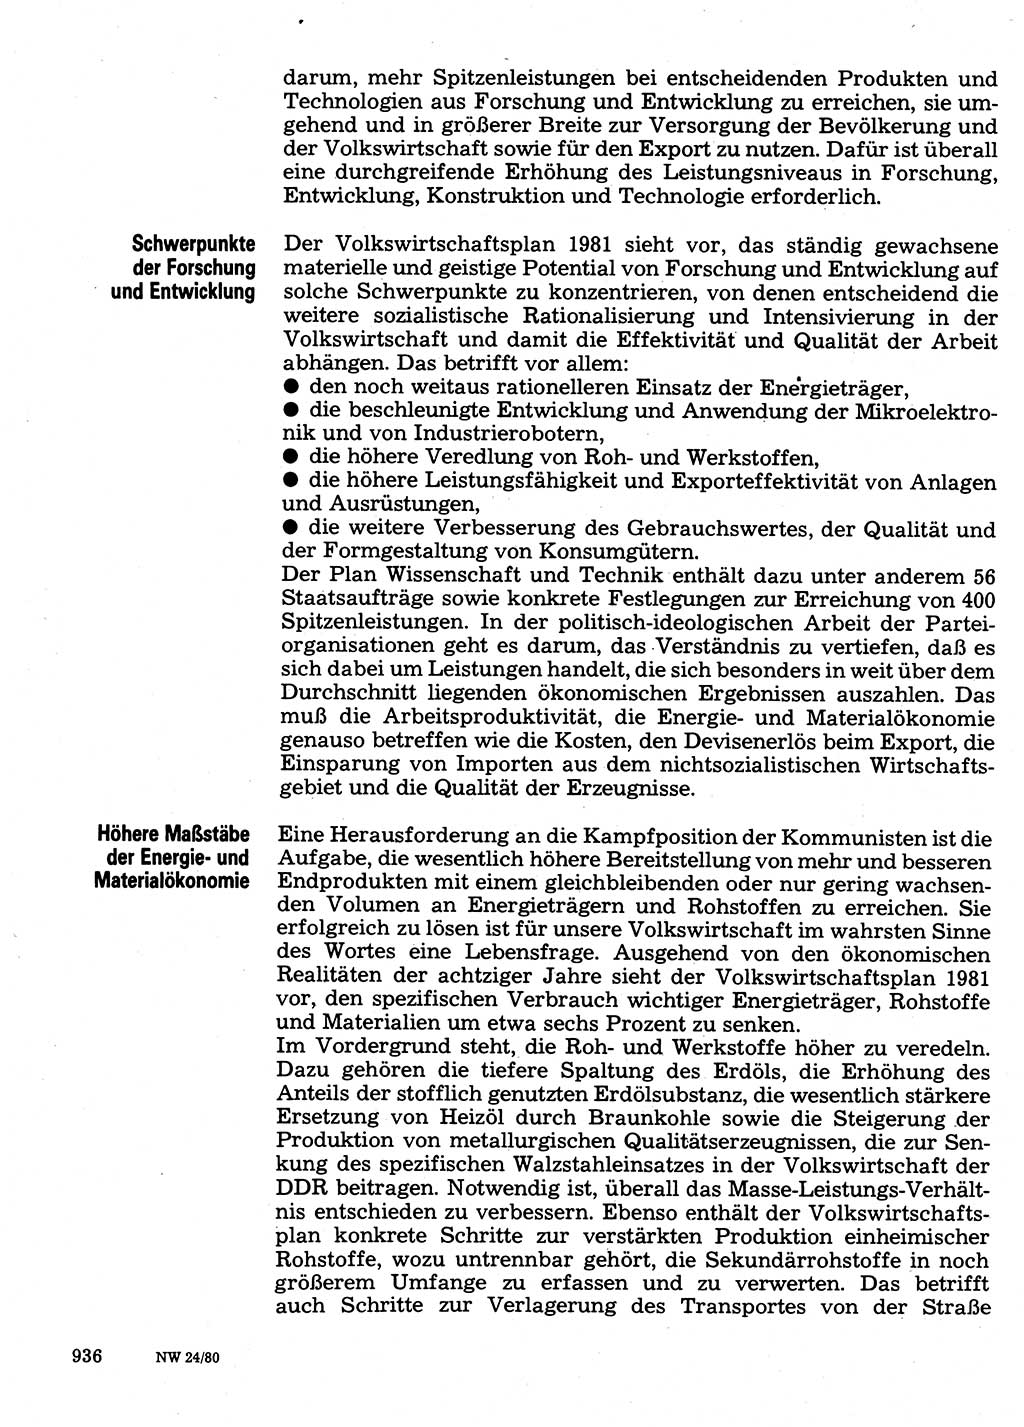 Neuer Weg (NW), Organ des Zentralkomitees (ZK) der SED (Sozialistische Einheitspartei Deutschlands) für Fragen des Parteilebens, 35. Jahrgang [Deutsche Demokratische Republik (DDR)] 1980, Seite 936 (NW ZK SED DDR 1980, S. 936)